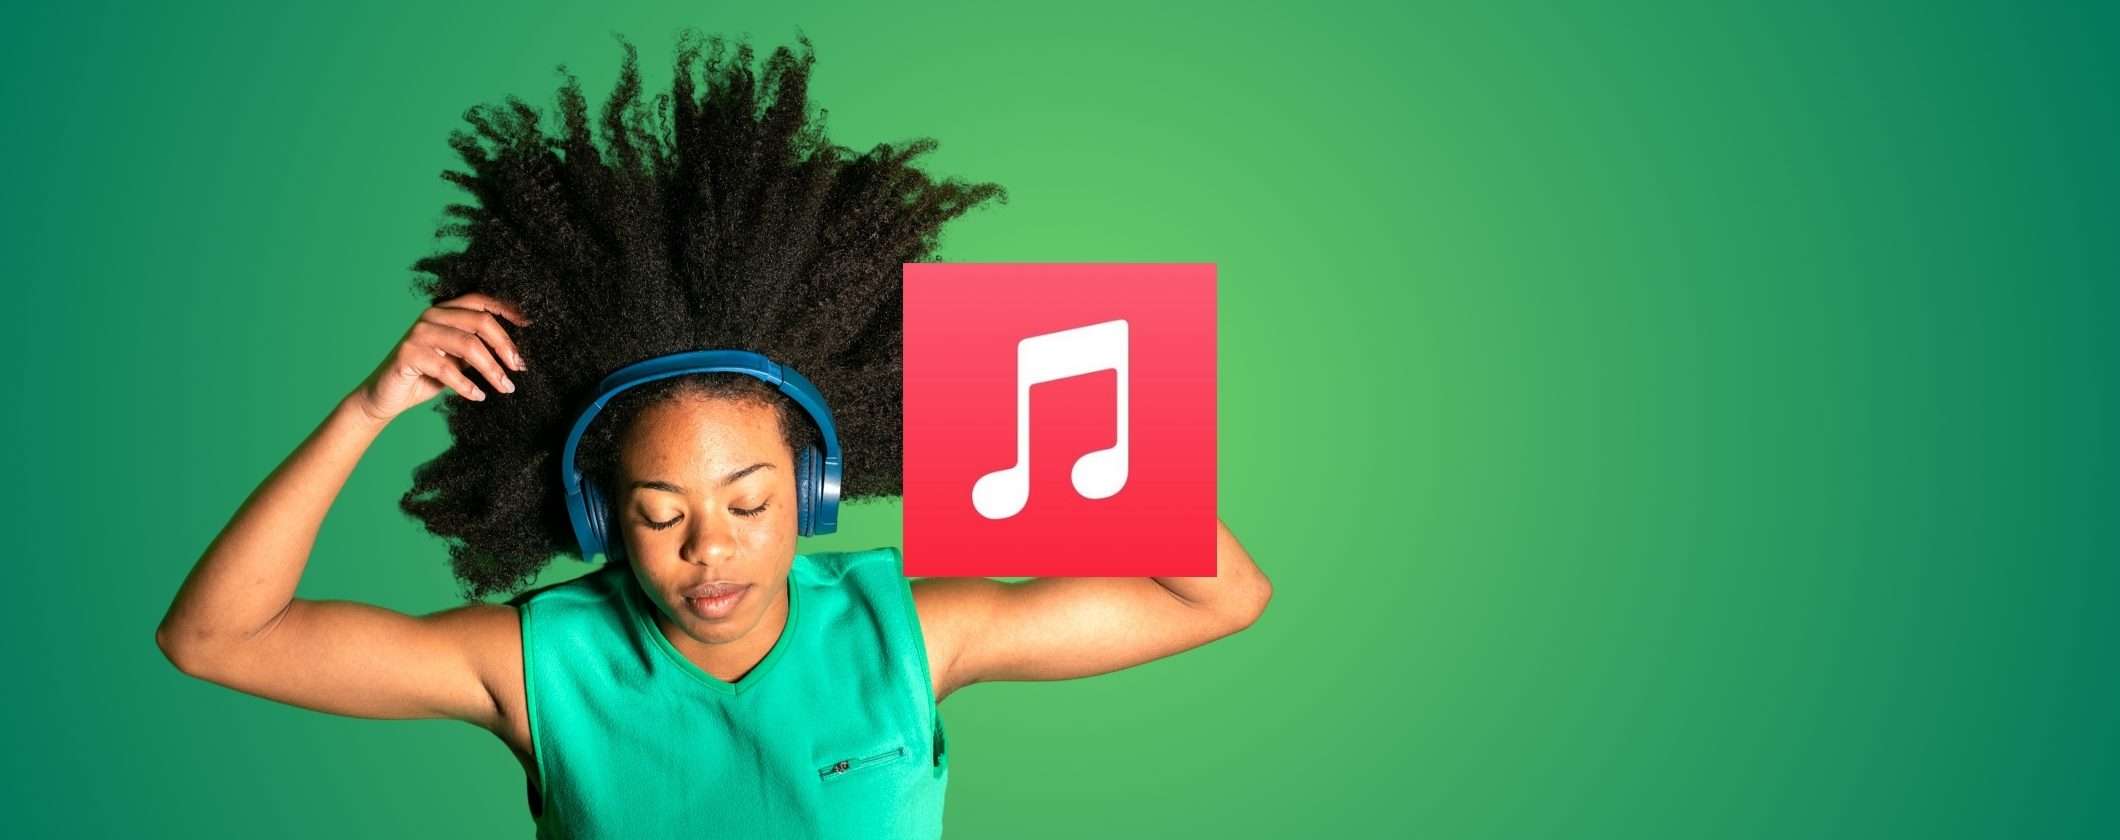 Apple Music: 100 milioni di brani e ZERO pubblicità, scopri l'offerta